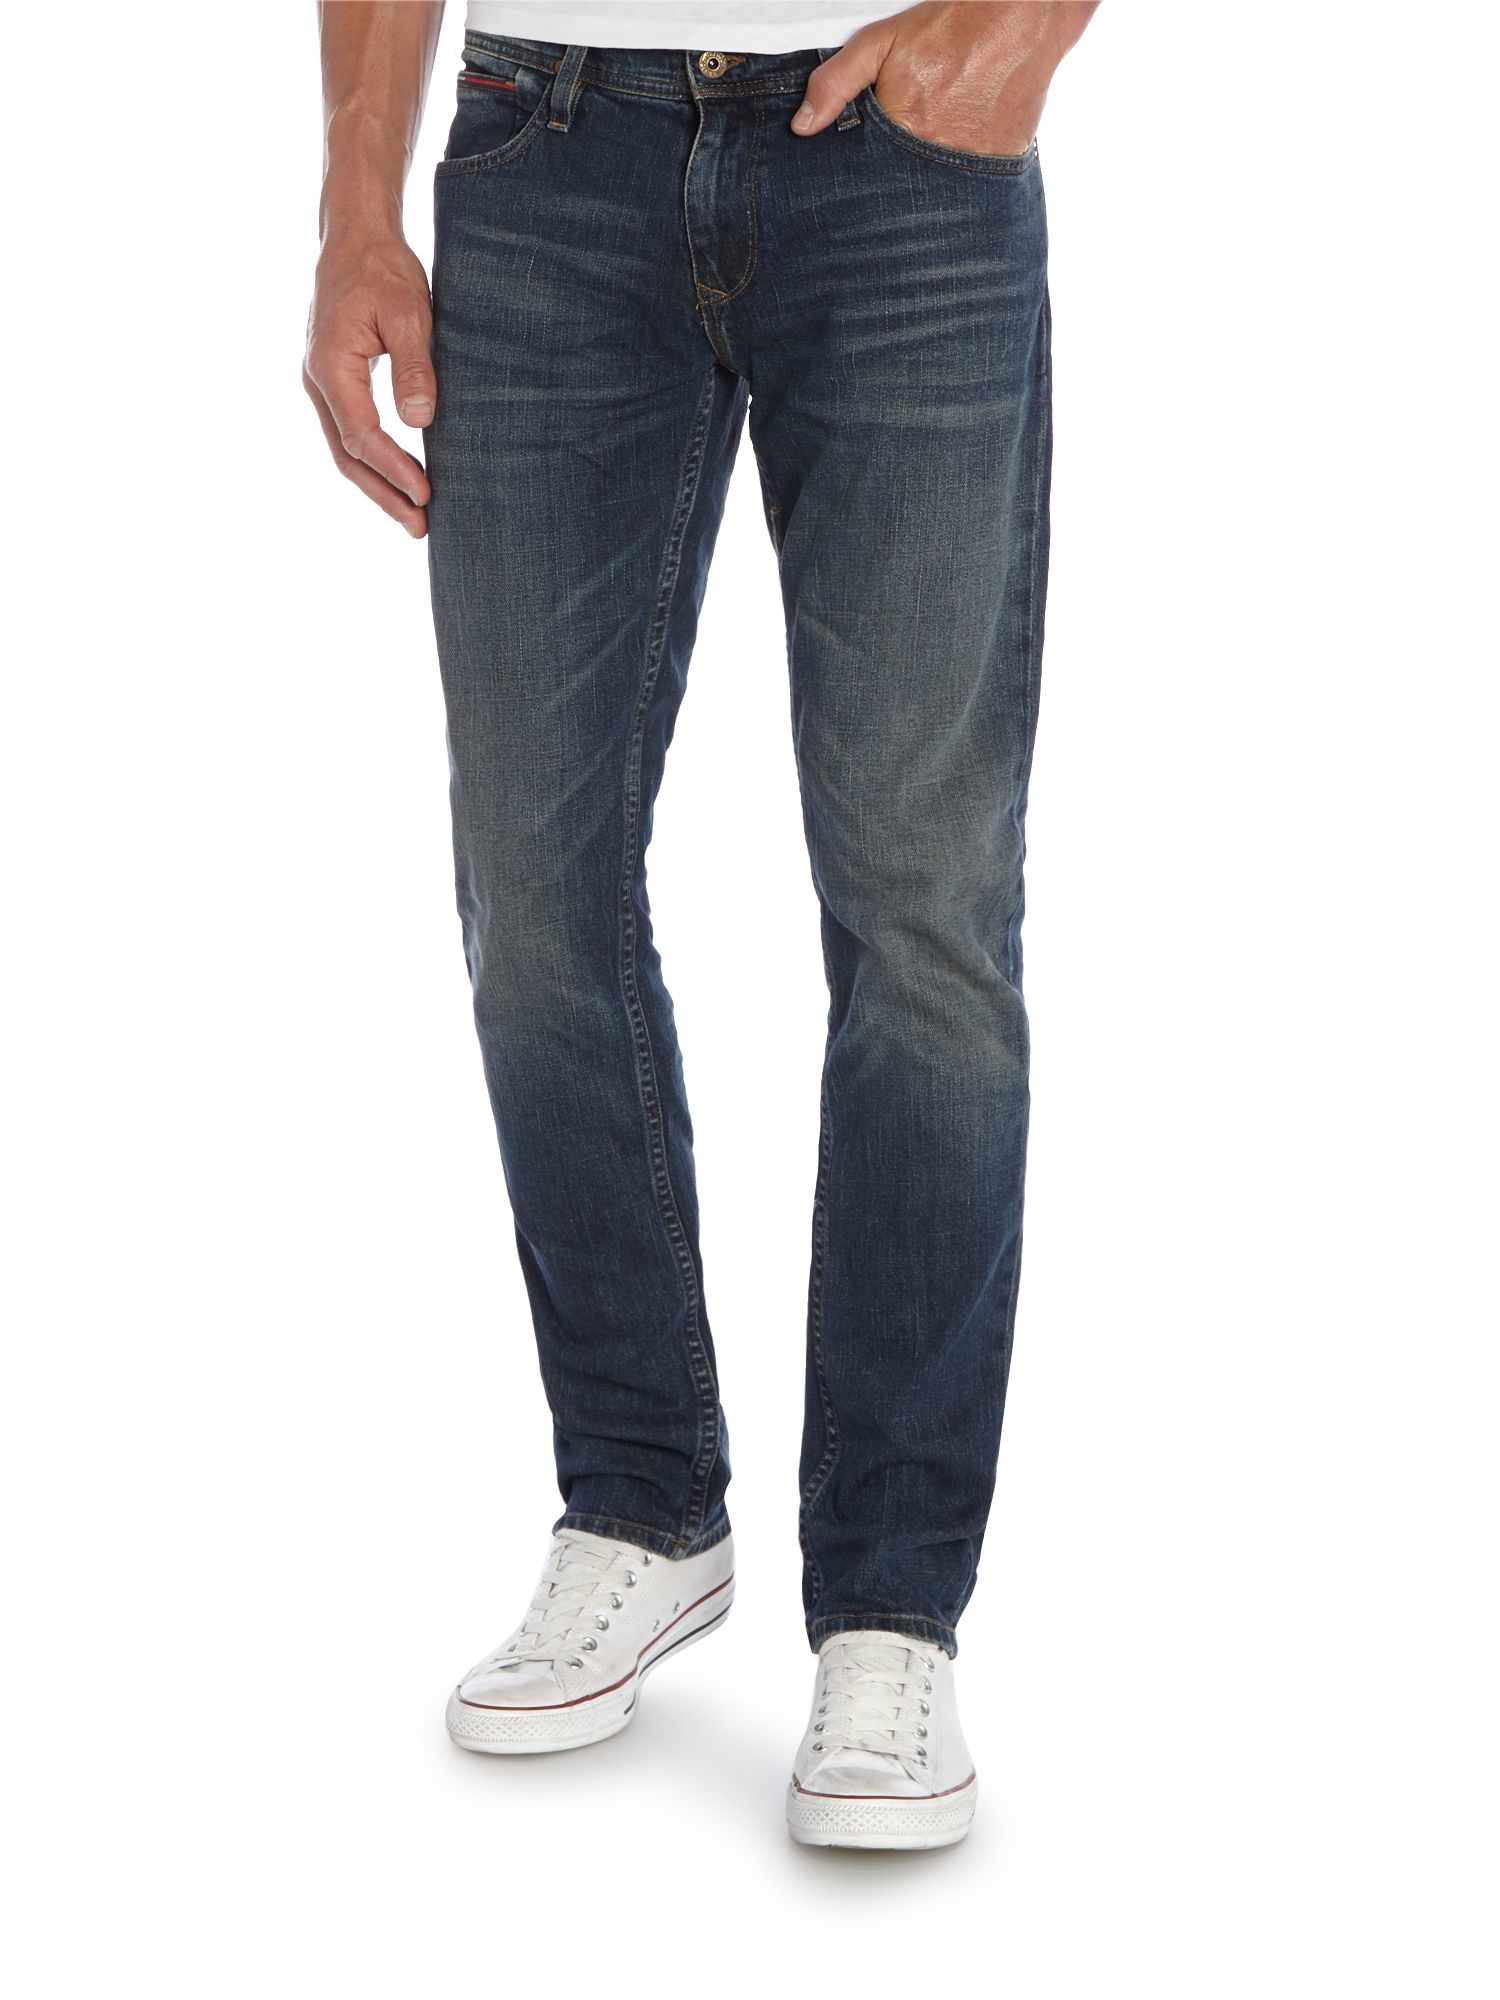 Tommy Hilfiger Scanton Jeans in Black (Blue) for Men - Lyst